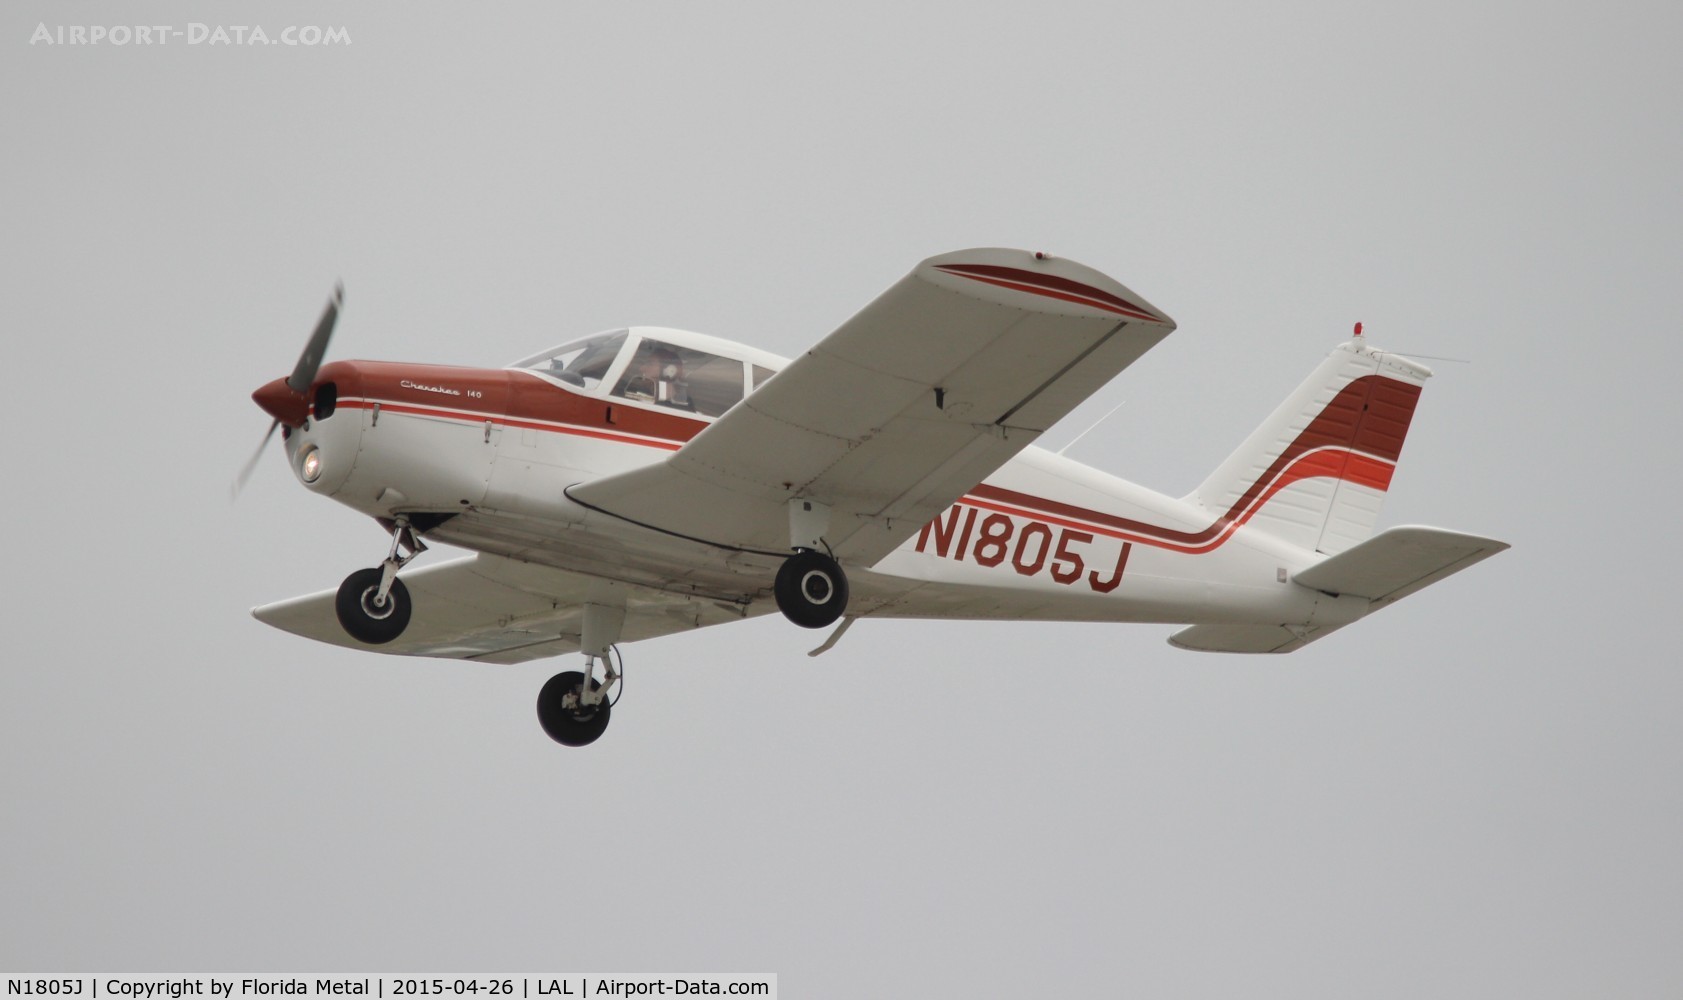 N1805J, 1968 Piper PA-28-140 C/N 28-24233, PA-28-140